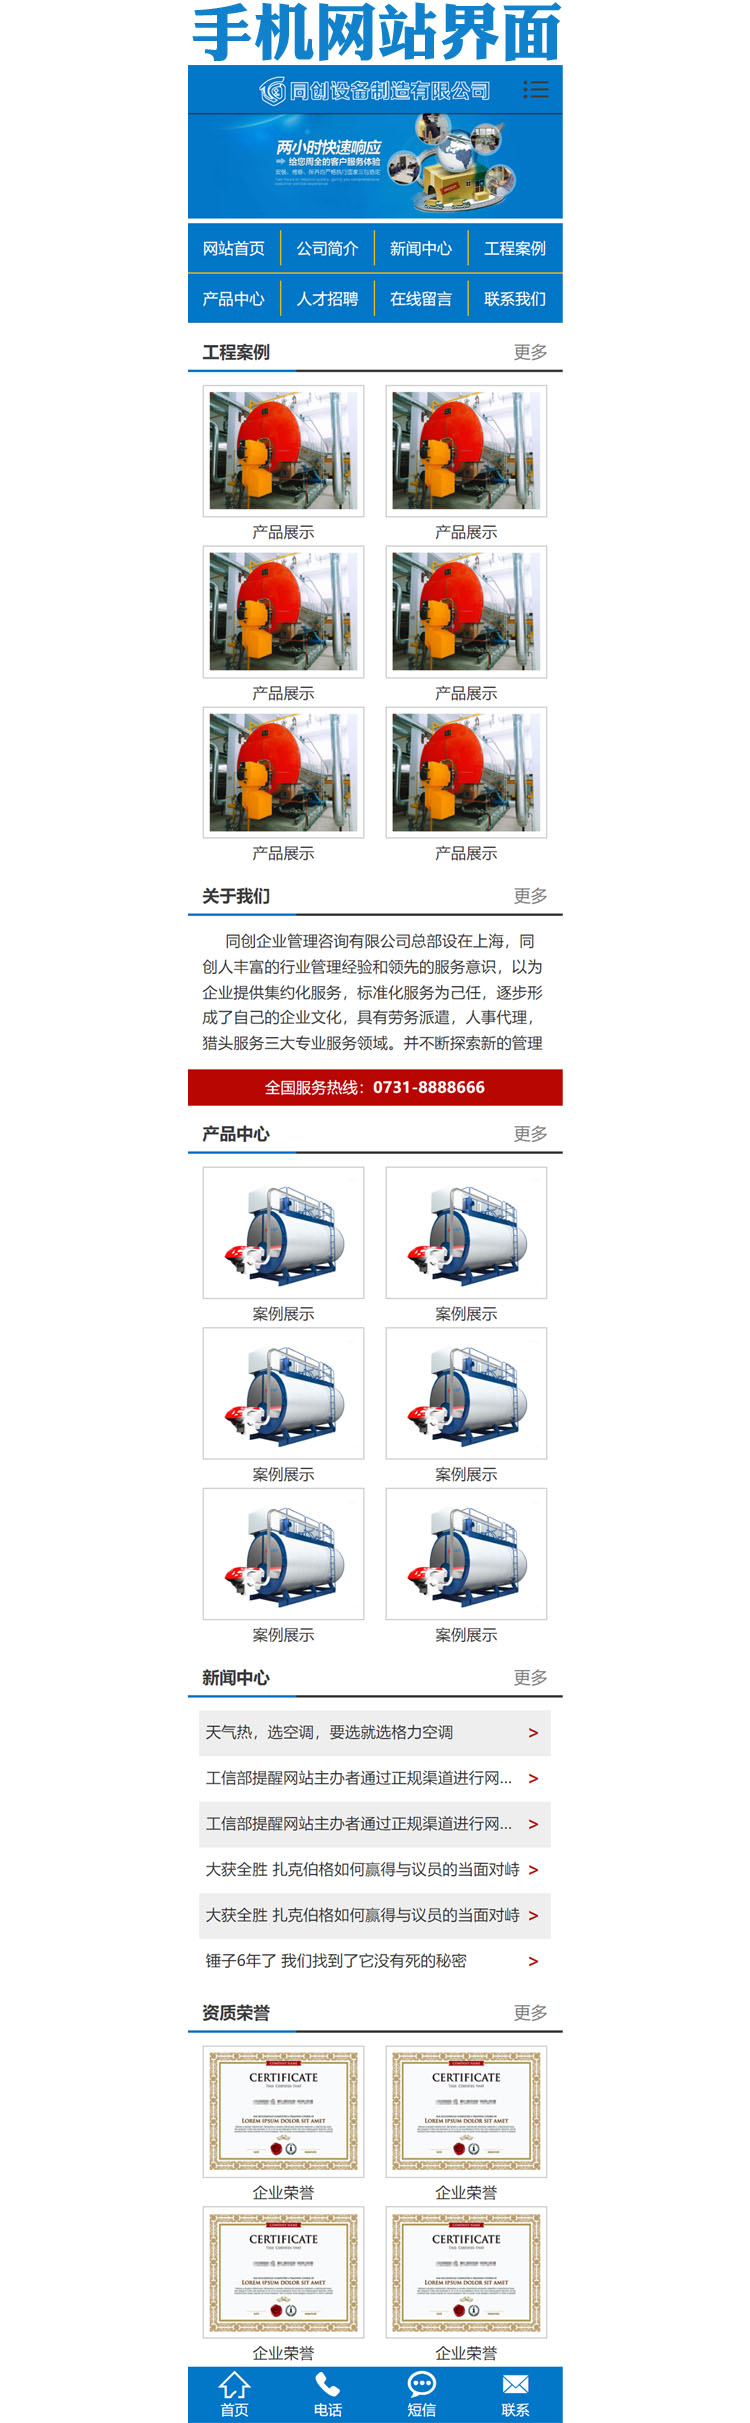 营销型机械锅炉设备网站源码-XX094-3